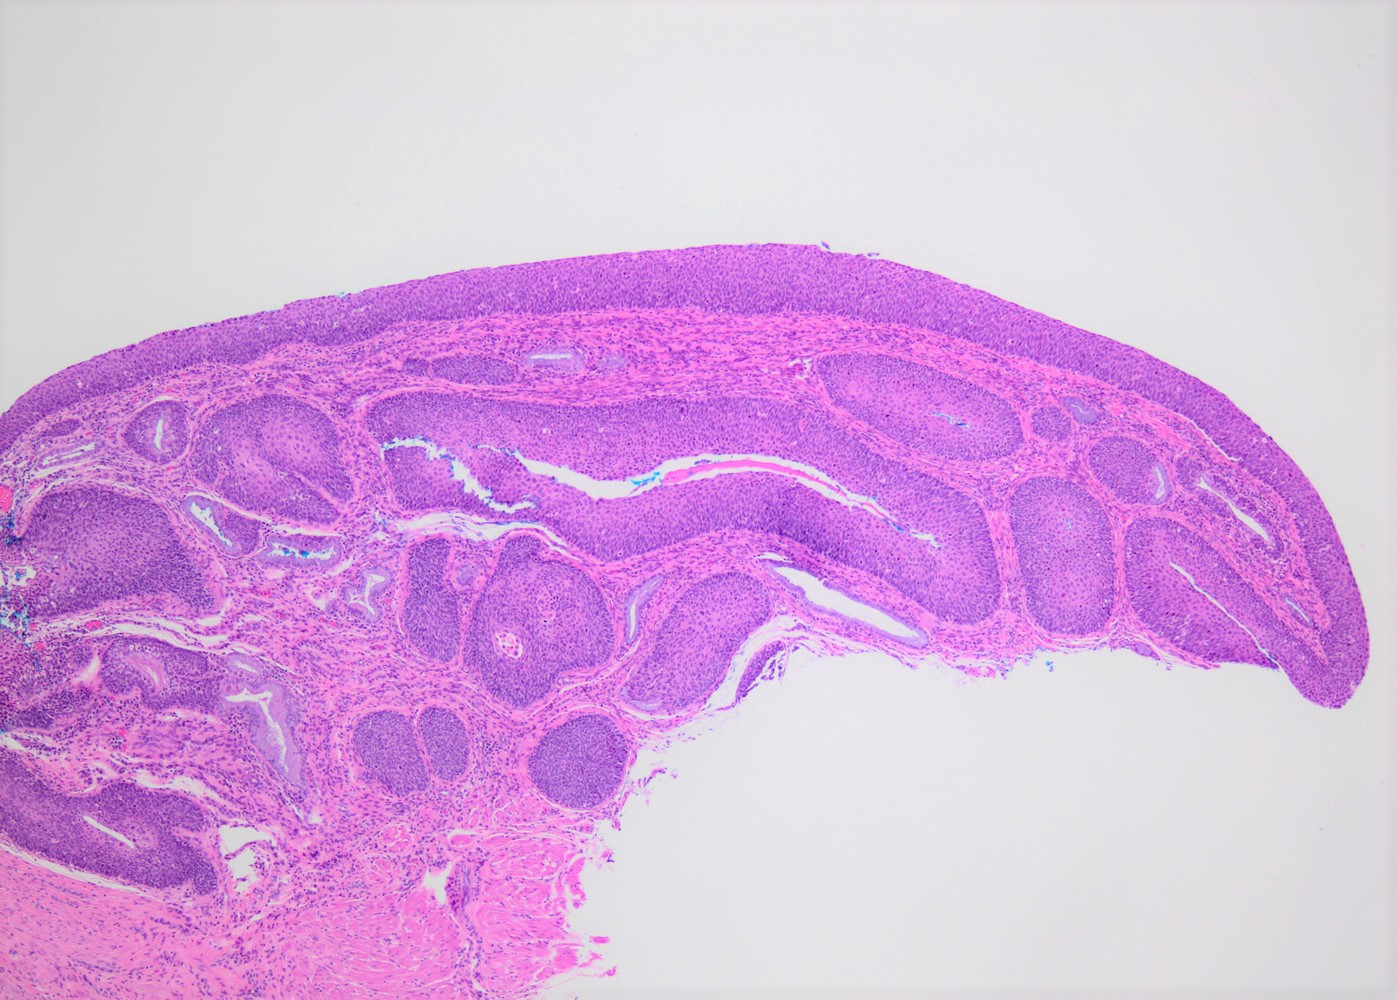 CIN III involving endocervical glands